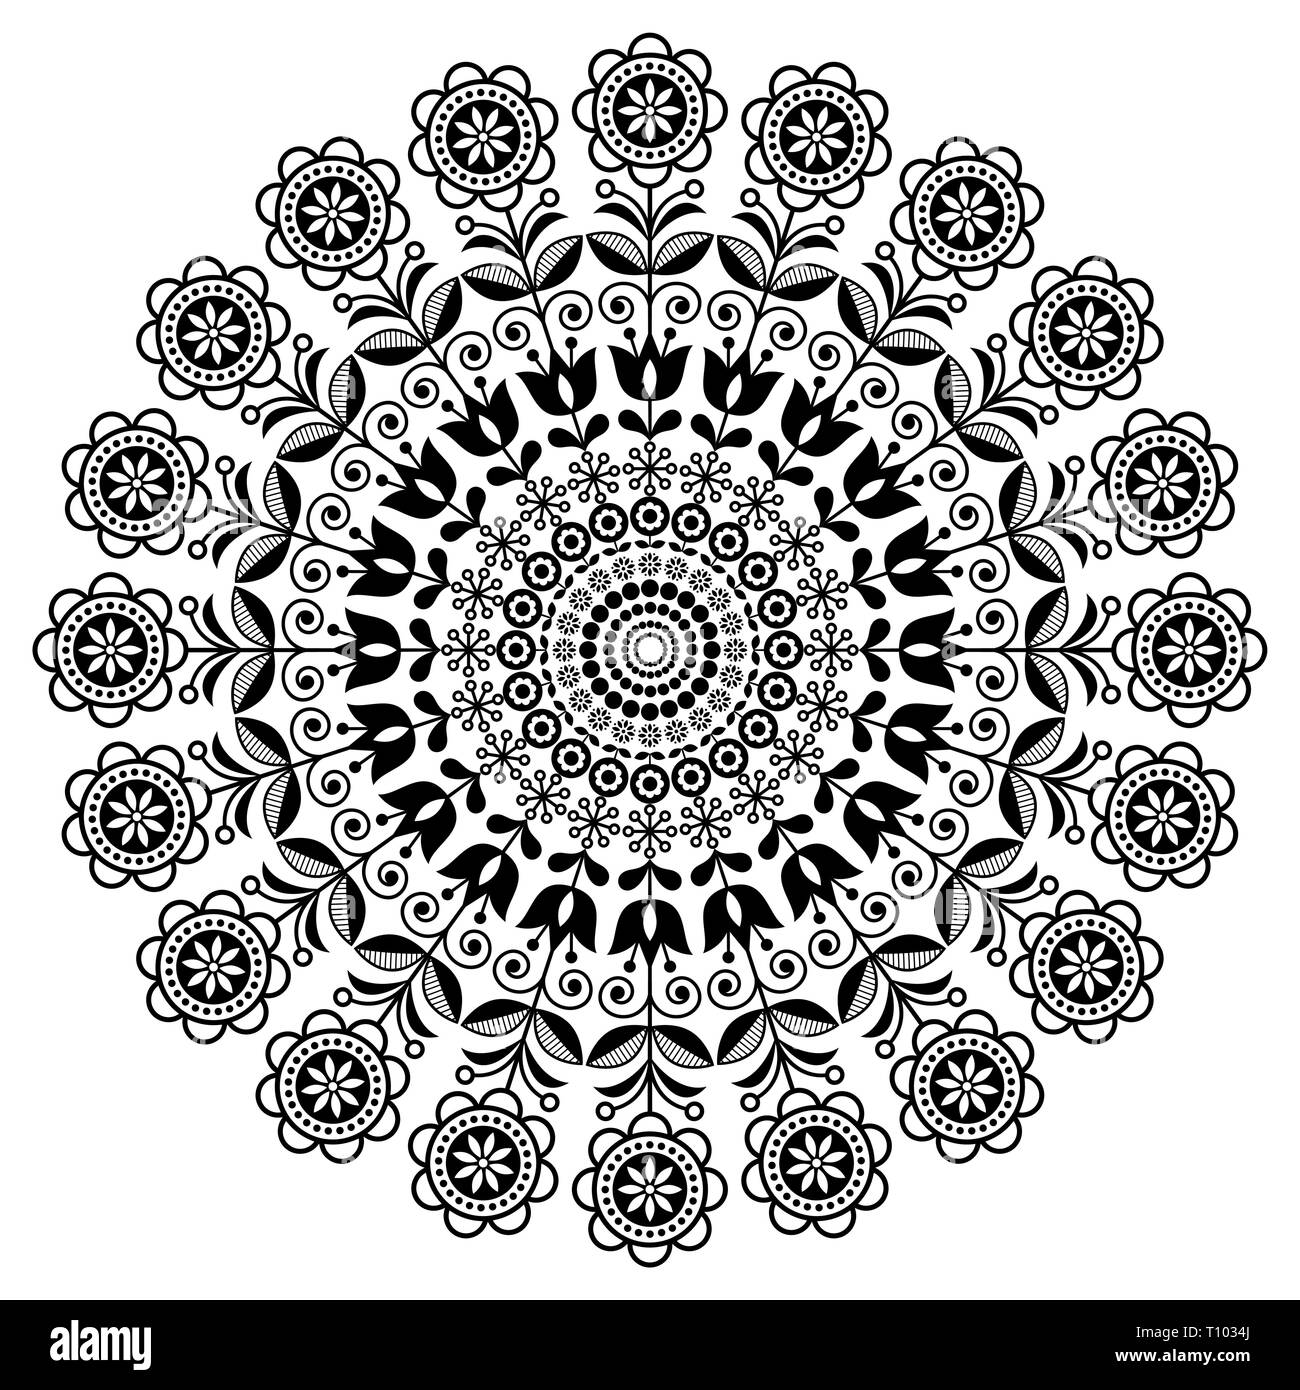 Skandinavische Volkskunst vektor Mandala mit Blumen, Blumen runde Ornament, Nordic Design mit Blumen im Kreis, ethnische Zusammensetzung Stock Vektor